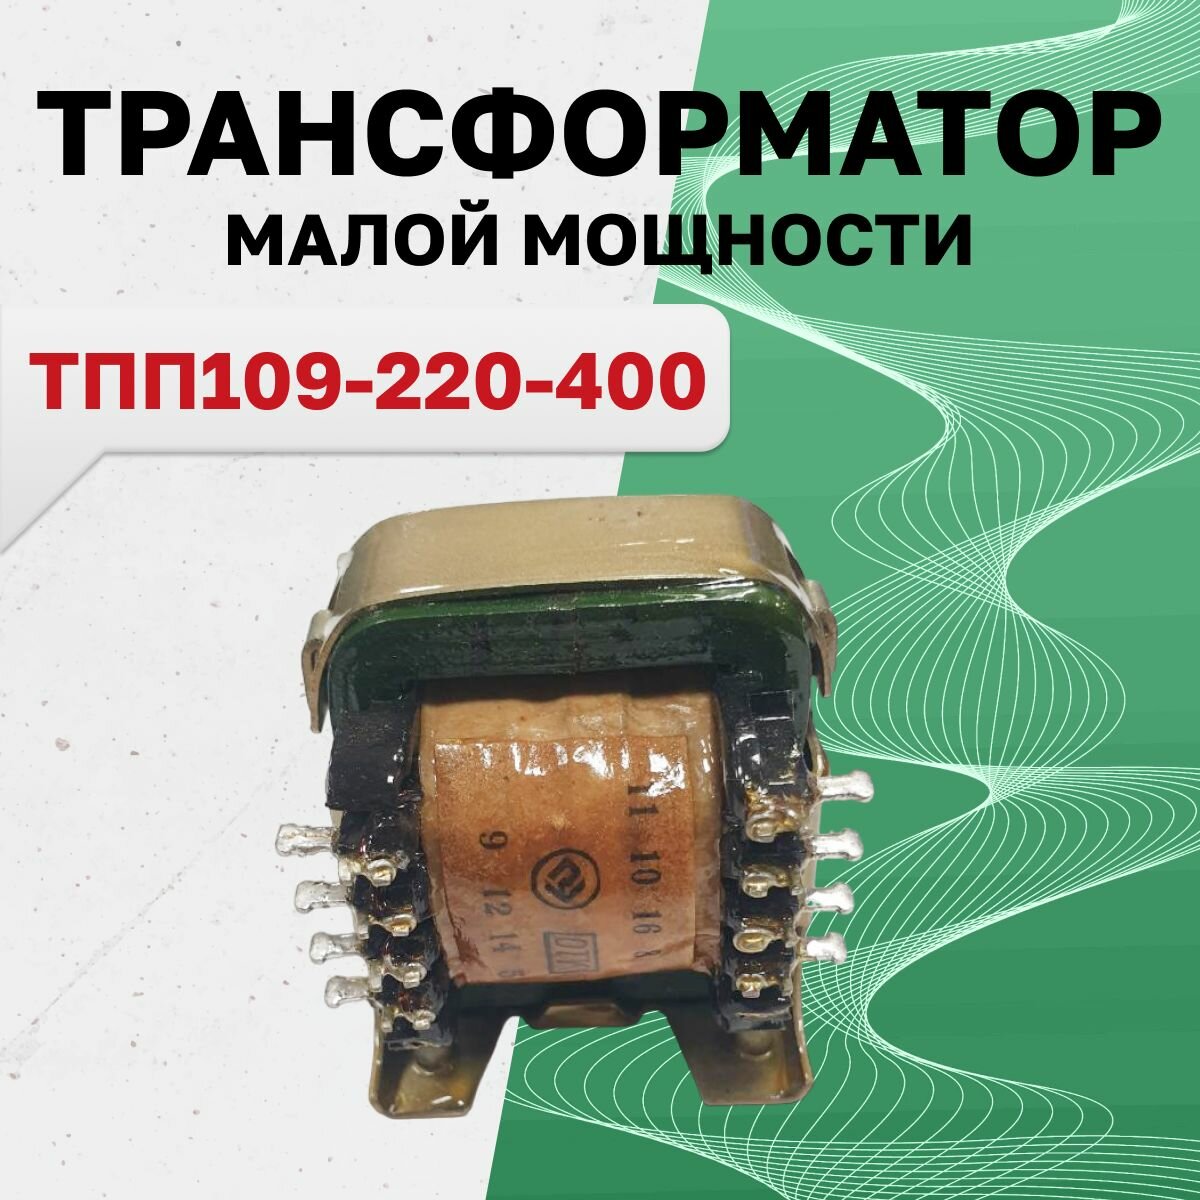 ТПП109-220-400 (г/в 11.07г.), Трансформатор